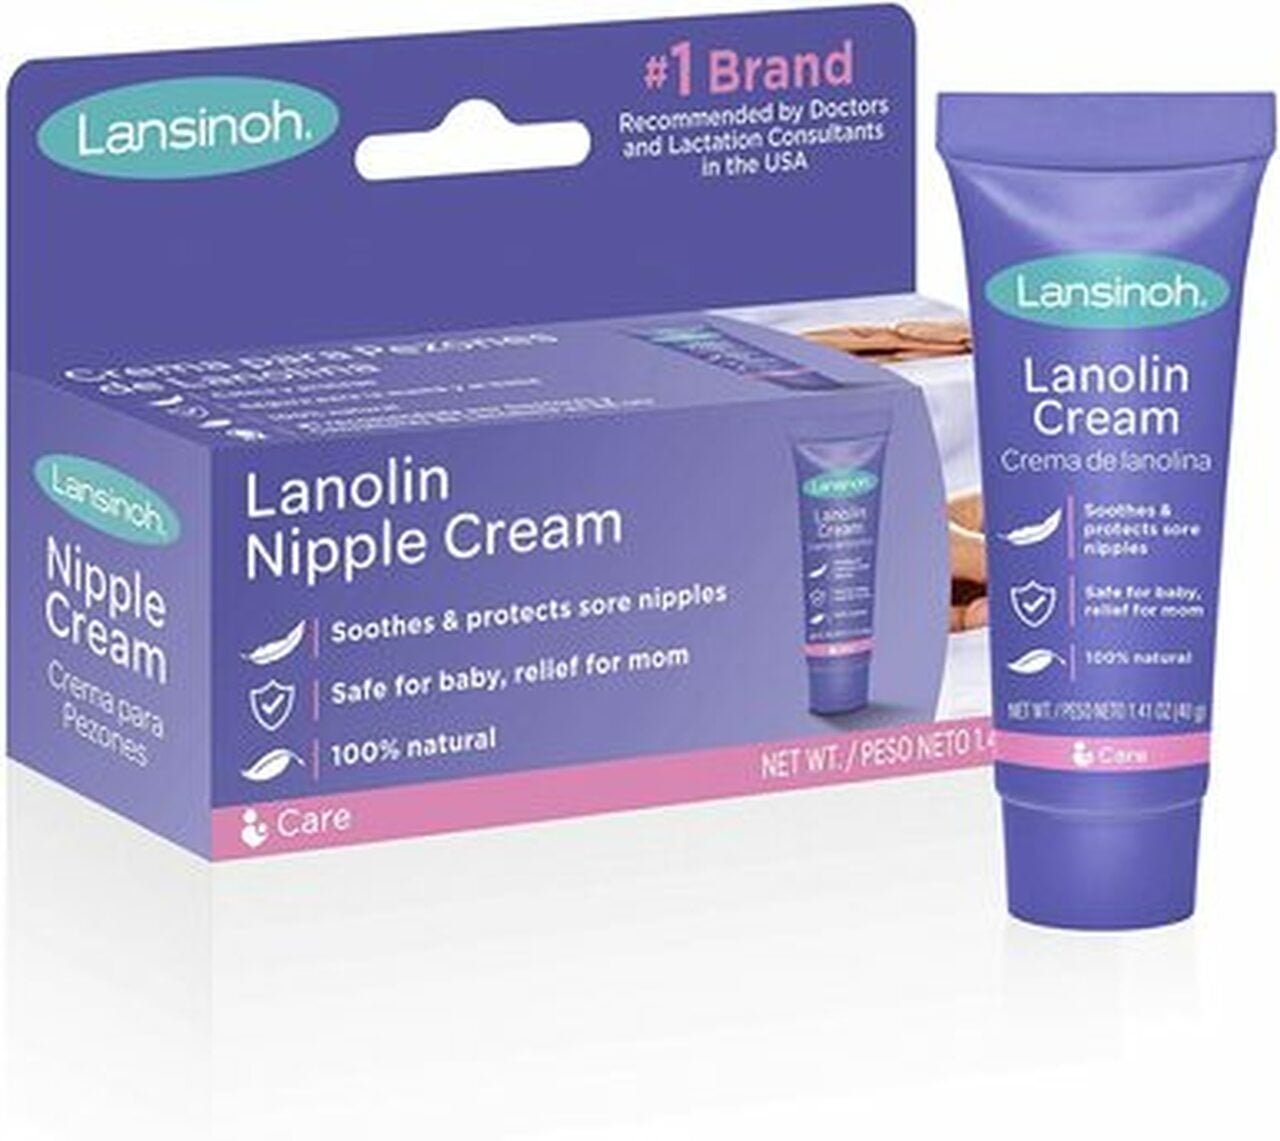 Lansinoh Lanolin Nipple Cream for Breastfeeding, 1.41 oz + .25 oz